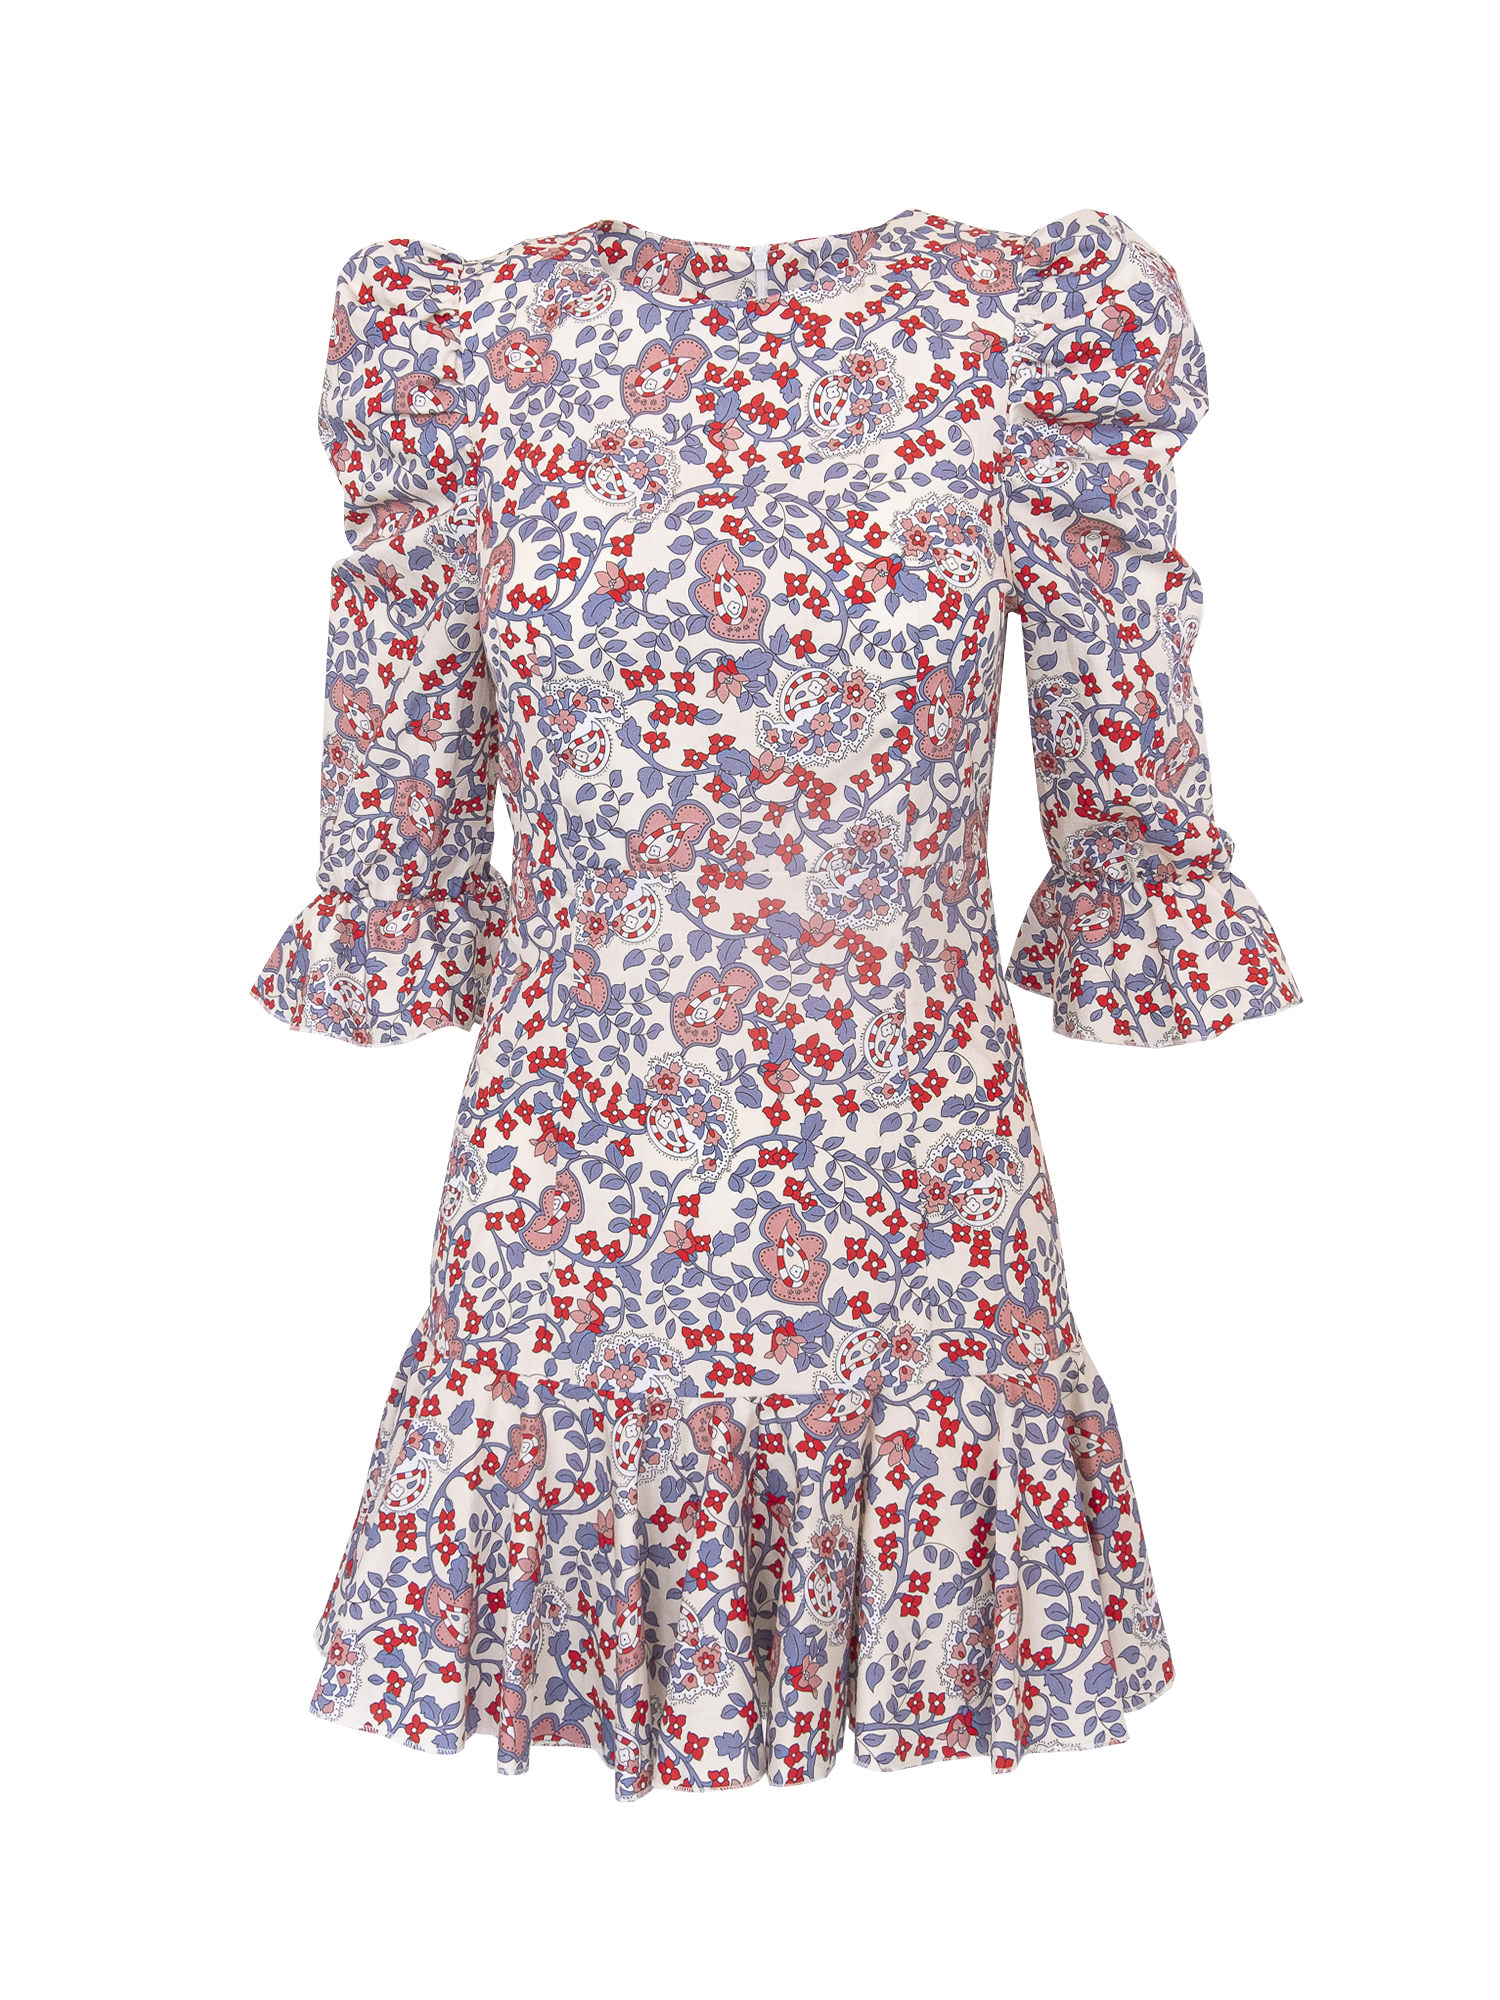 ANDREA - short Kew print cotton dress